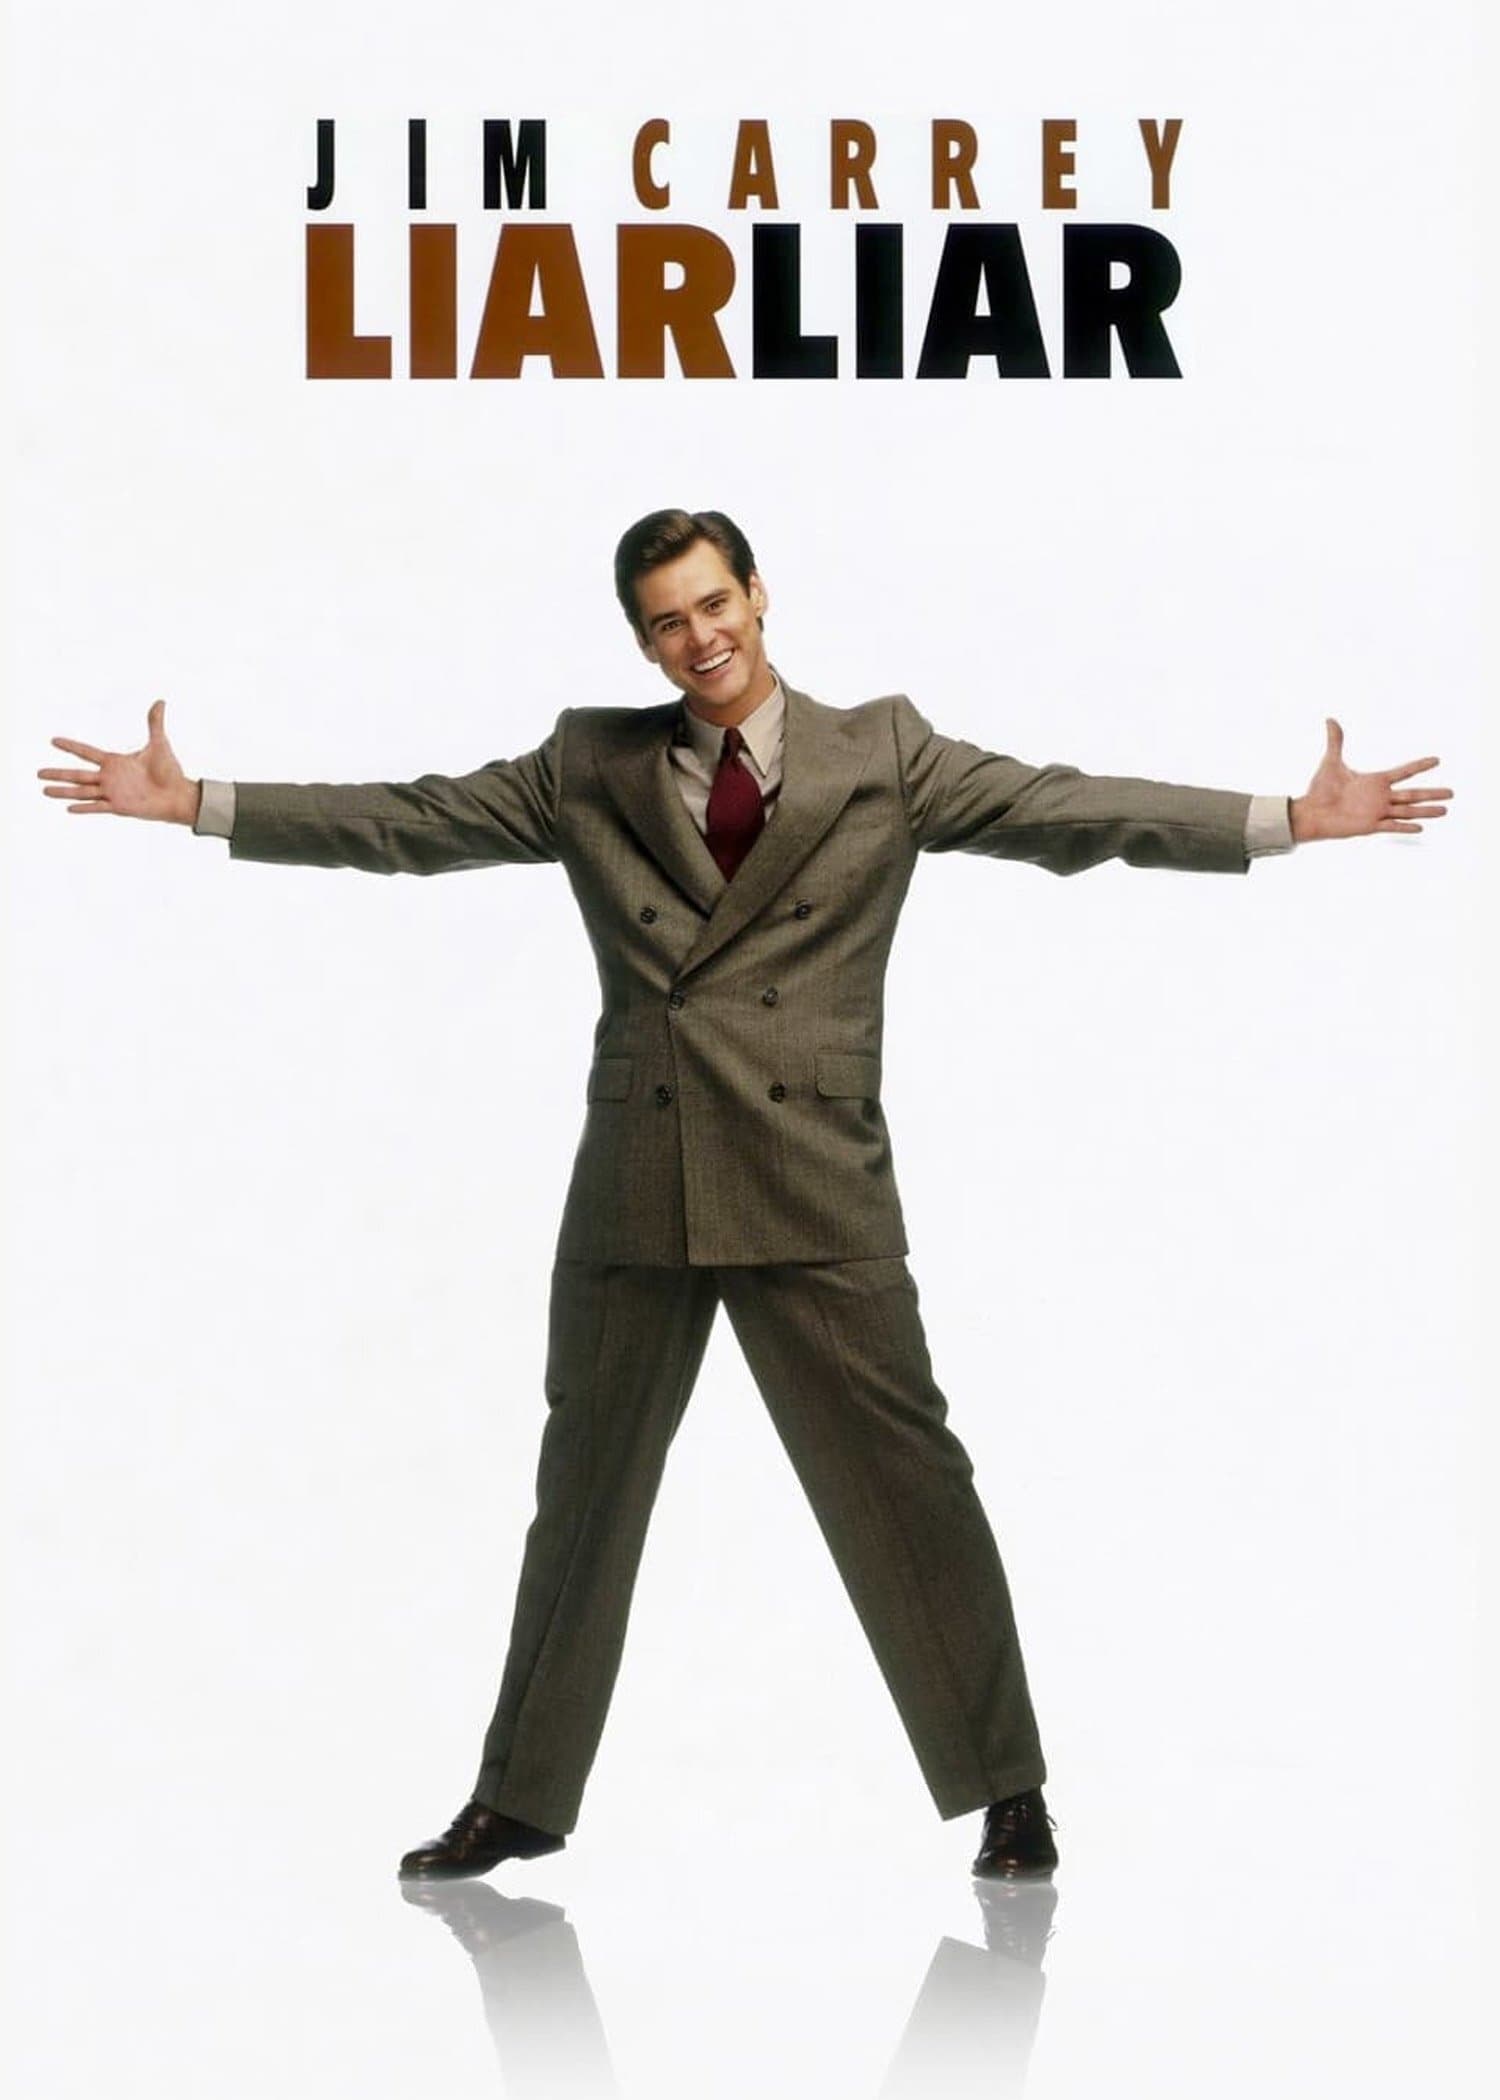 Liar Liar Movie poster